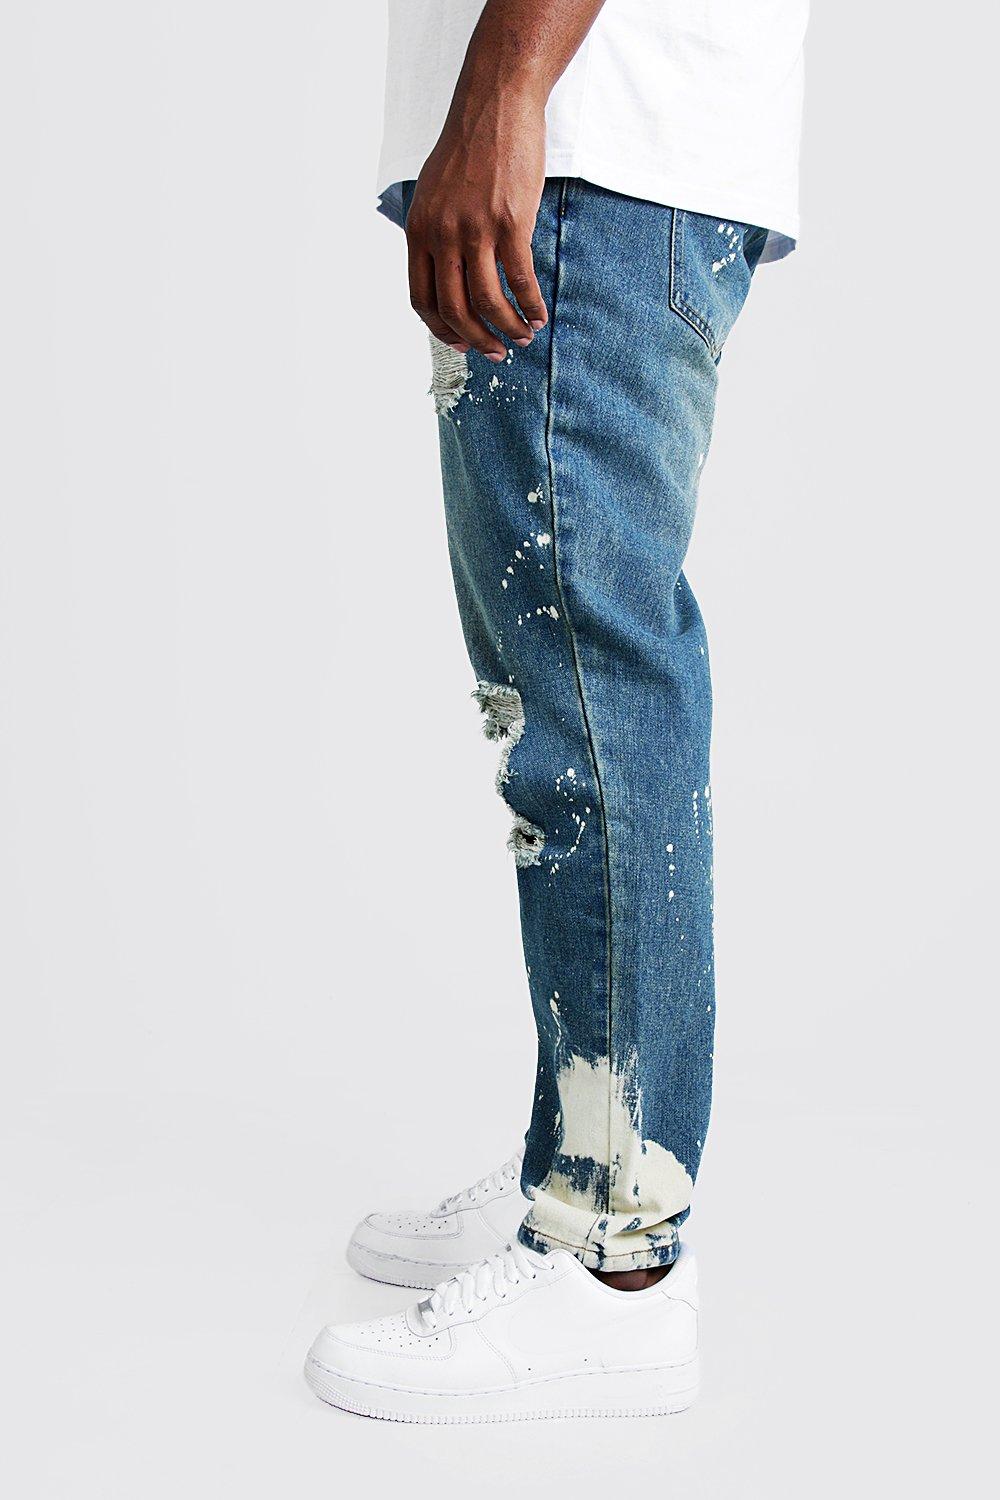 tall slim jeans